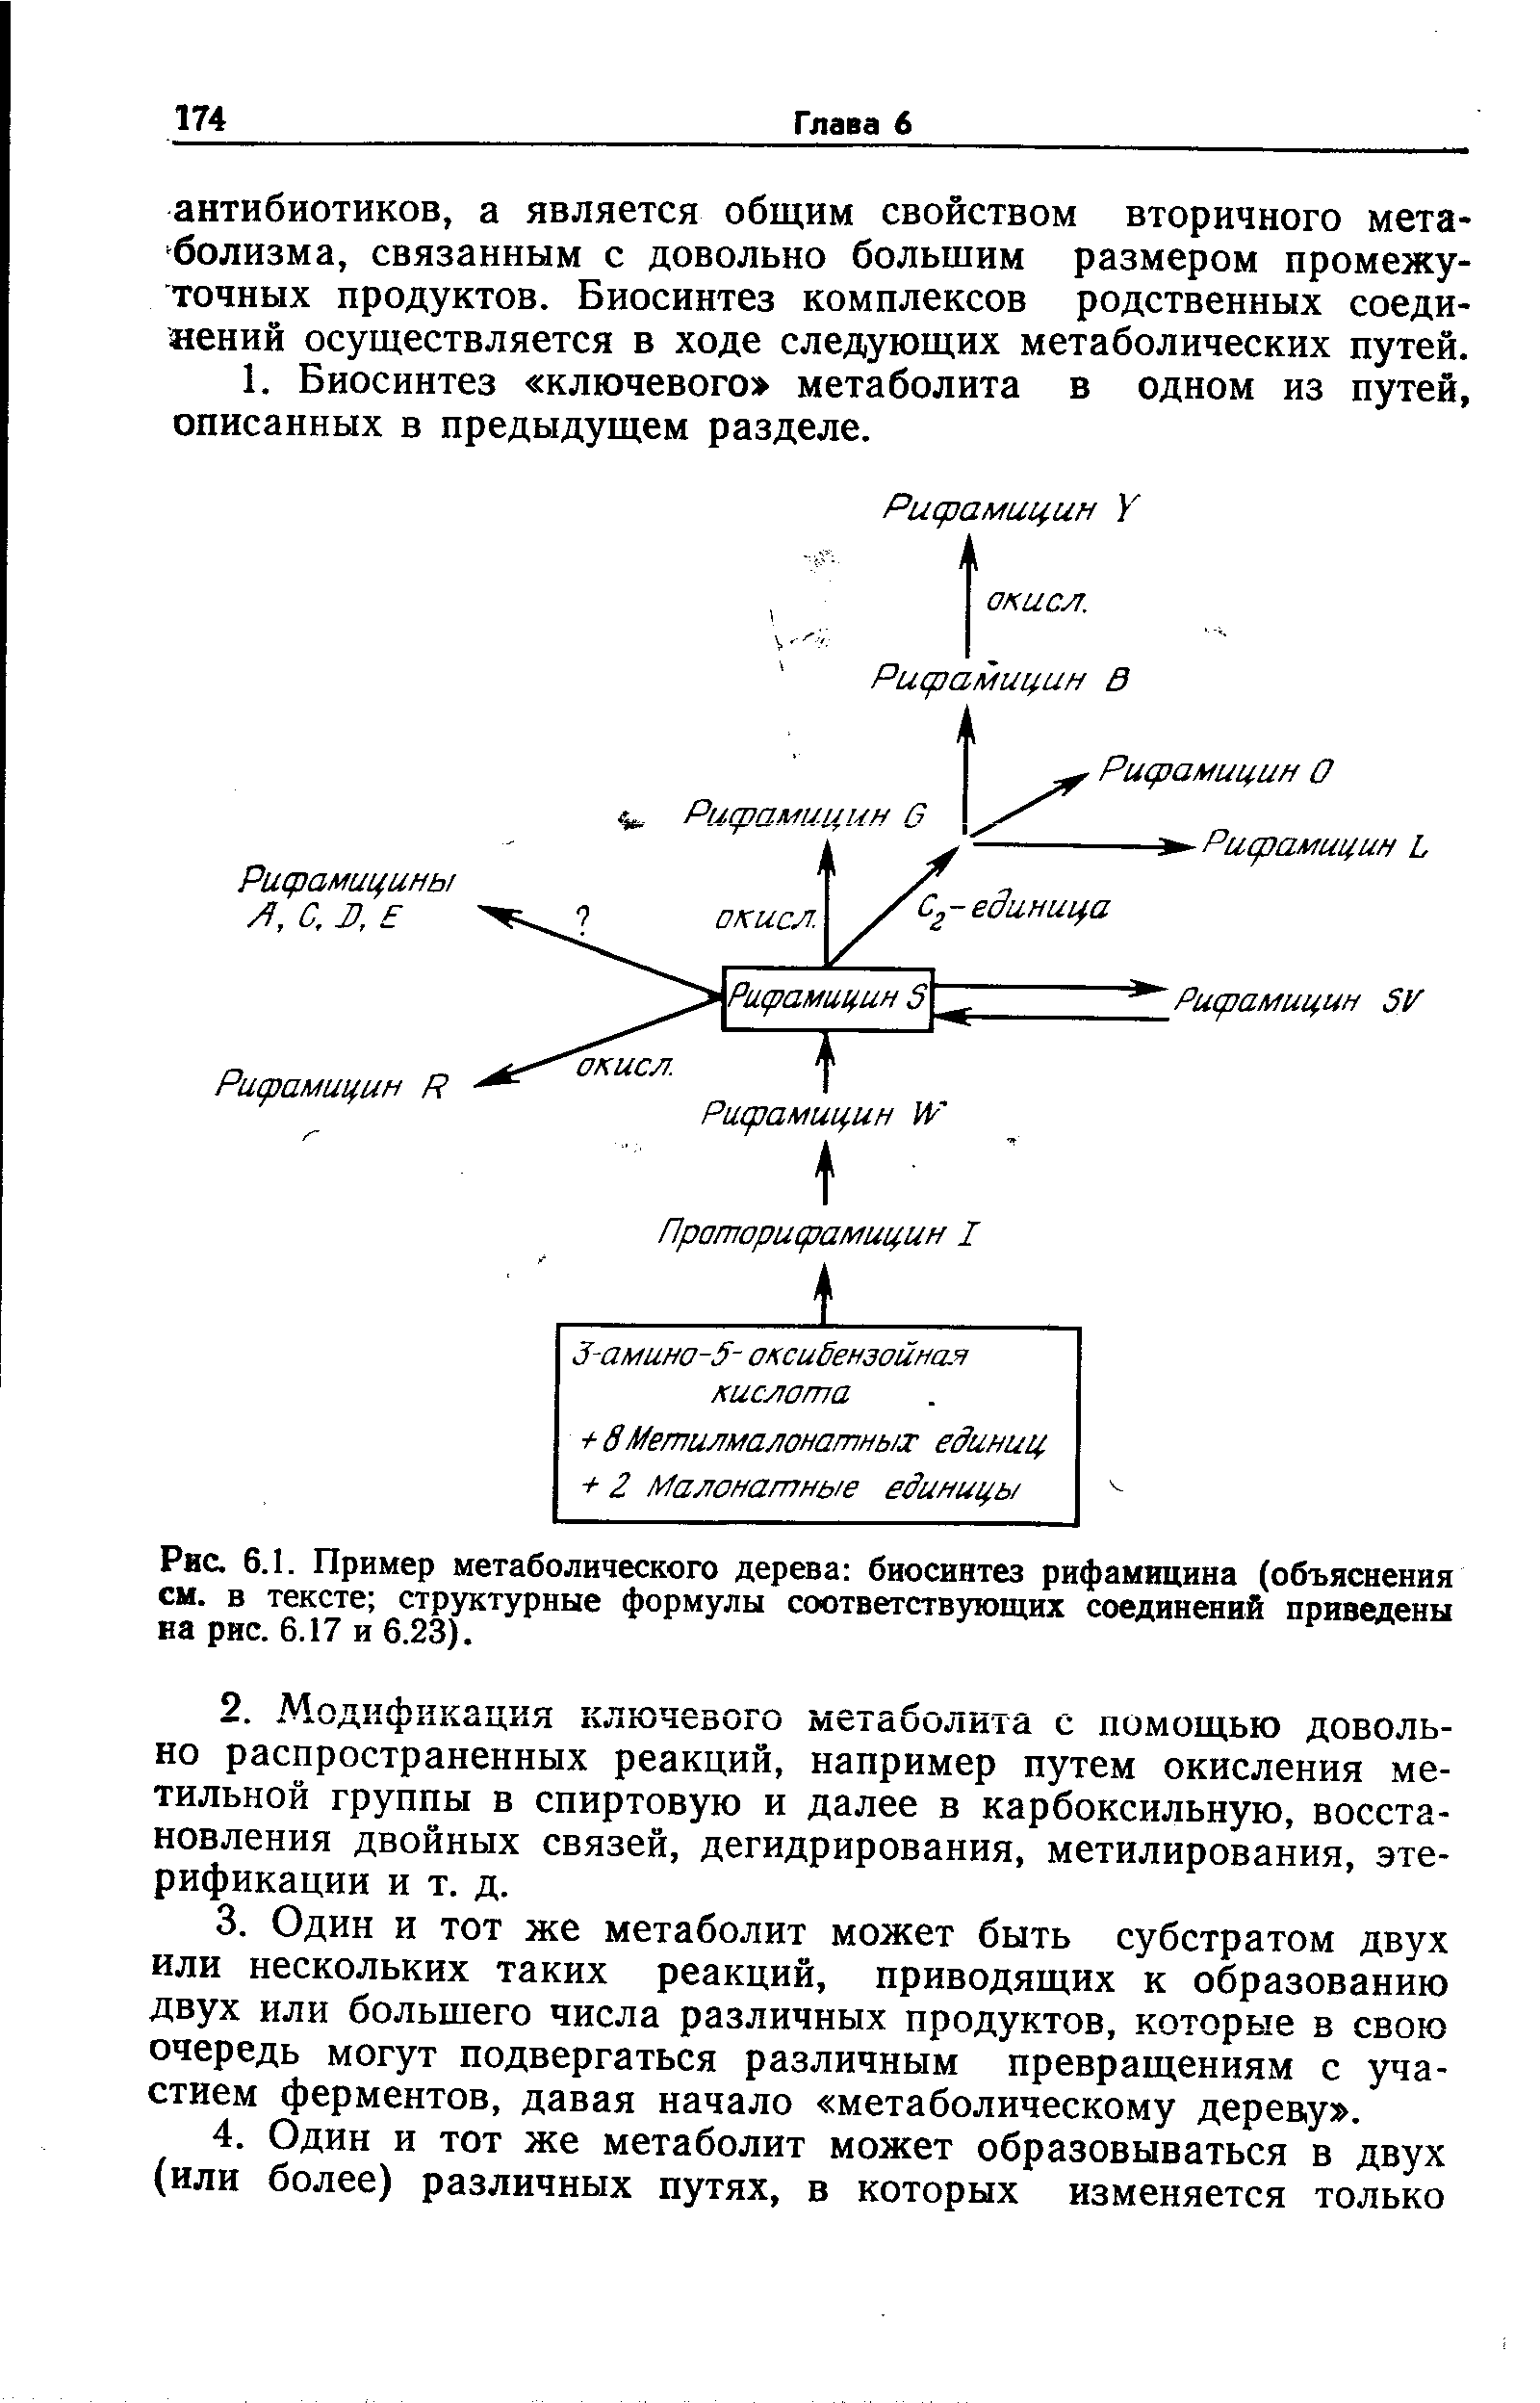 Рис. 6.1. Пример метаболического дерева биосинтез рифамицина (объяснения см. в тексте структурные формулы соответствующих соединений приведены на рис. 6.17 и 6.23).